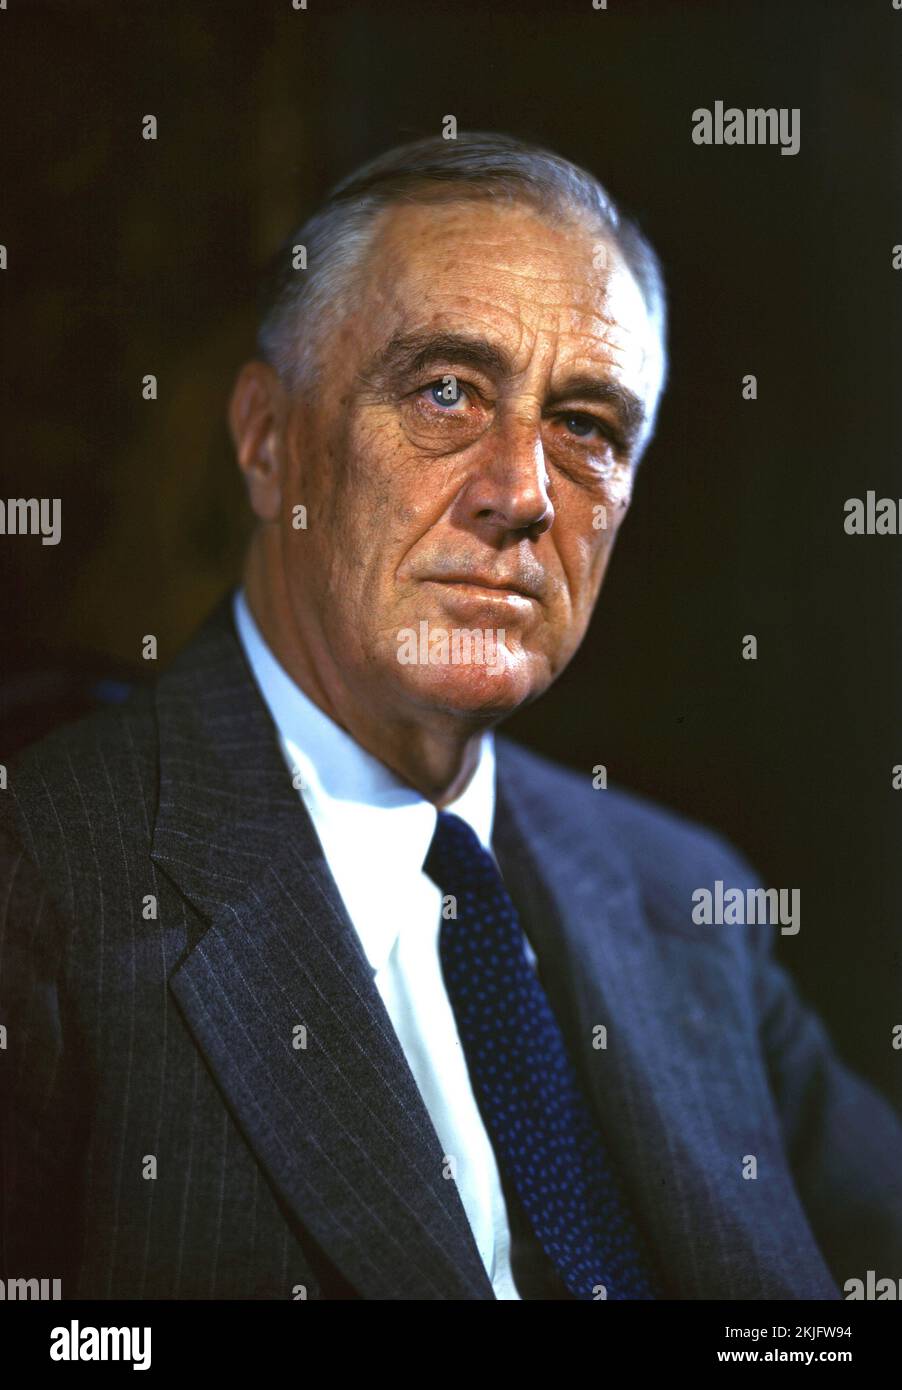 Un ritratto a colori del 1944 del presidente americano Franklin D Roosevelt. Aveva 62 anni. Credito fotografico https://commons.wikimedia.org/w/index.php?curid=71911951 Foto Stock